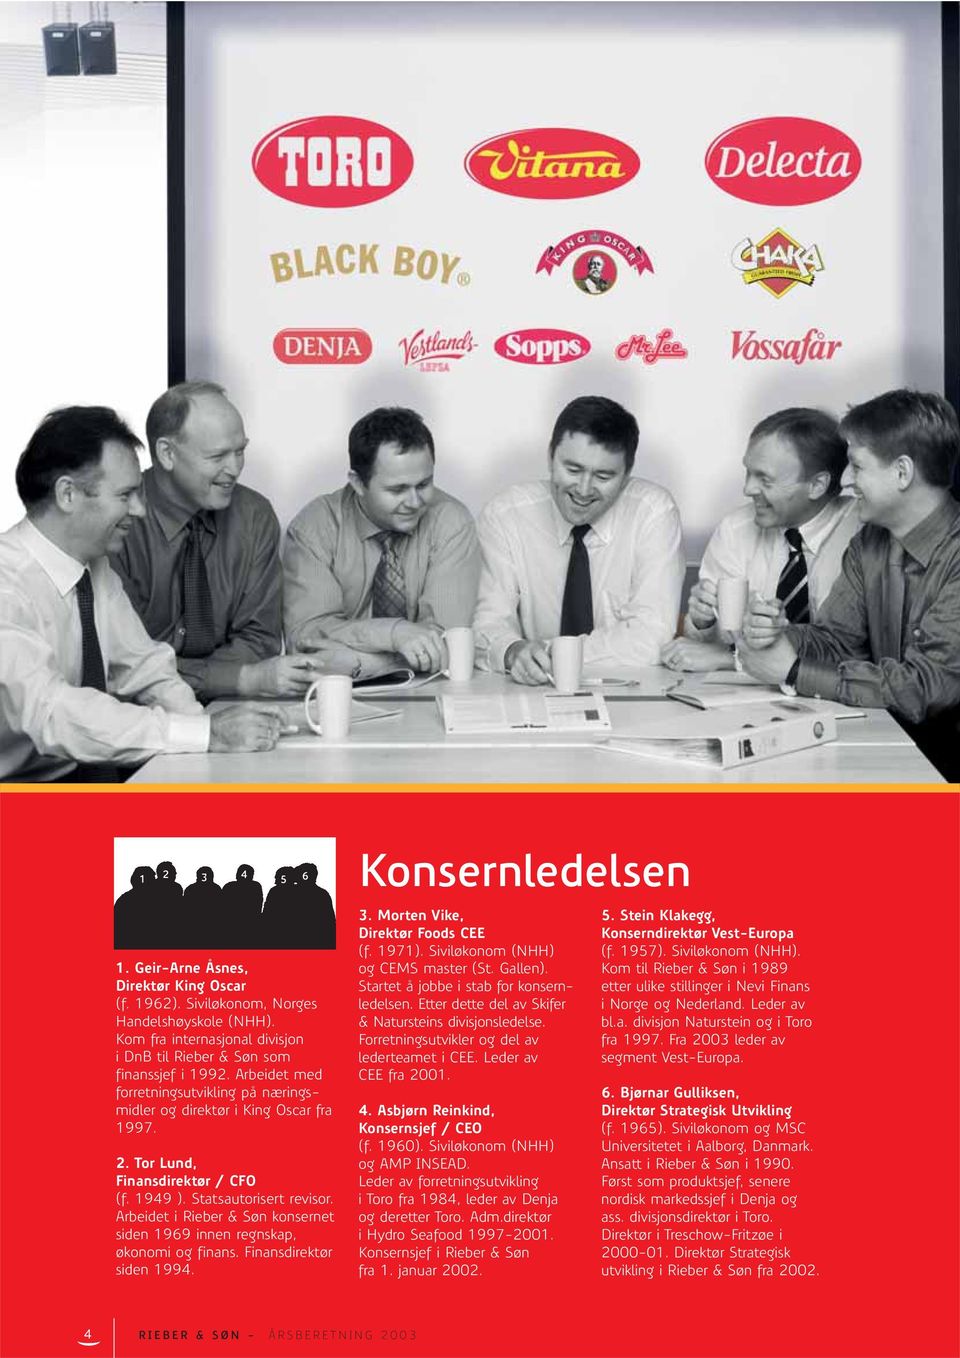 Arbeidet i Rieber & Søn konsernet siden 1969 innen regnskap, økonomi og finans. Finansdirektør siden 1994. Konsernledelsen 3. Morten Vike, Direktør Foods CEE (f. 1971).